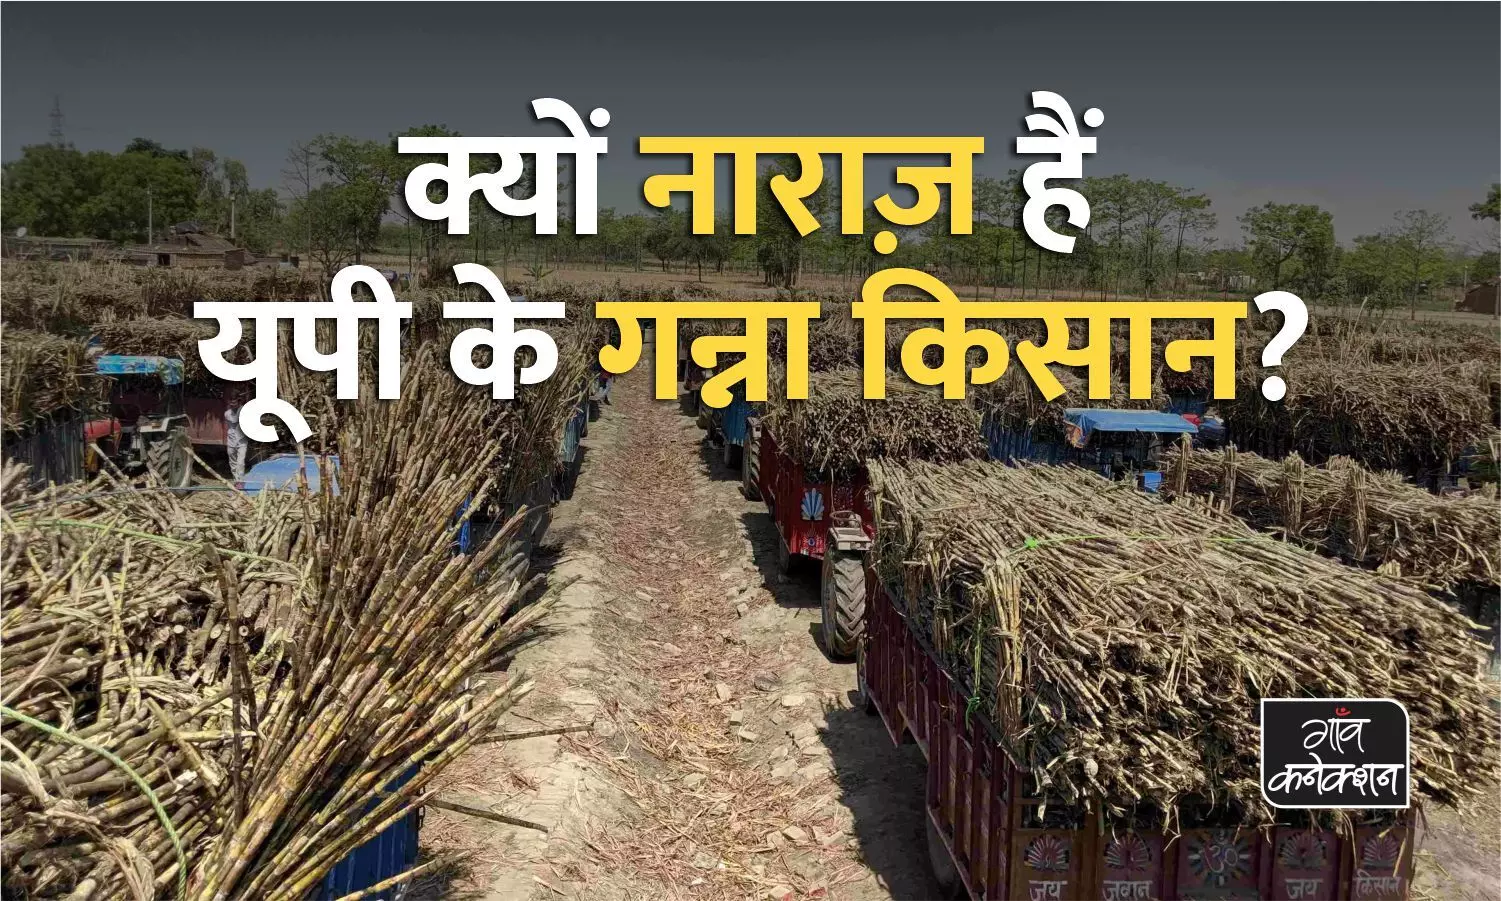 उत्तर प्रदेश: भाजपा के 6 साल के कार्यकाल में सिर्फ 20 रुपए प्रति कुंतल बढ़ा गन्ने का रेट